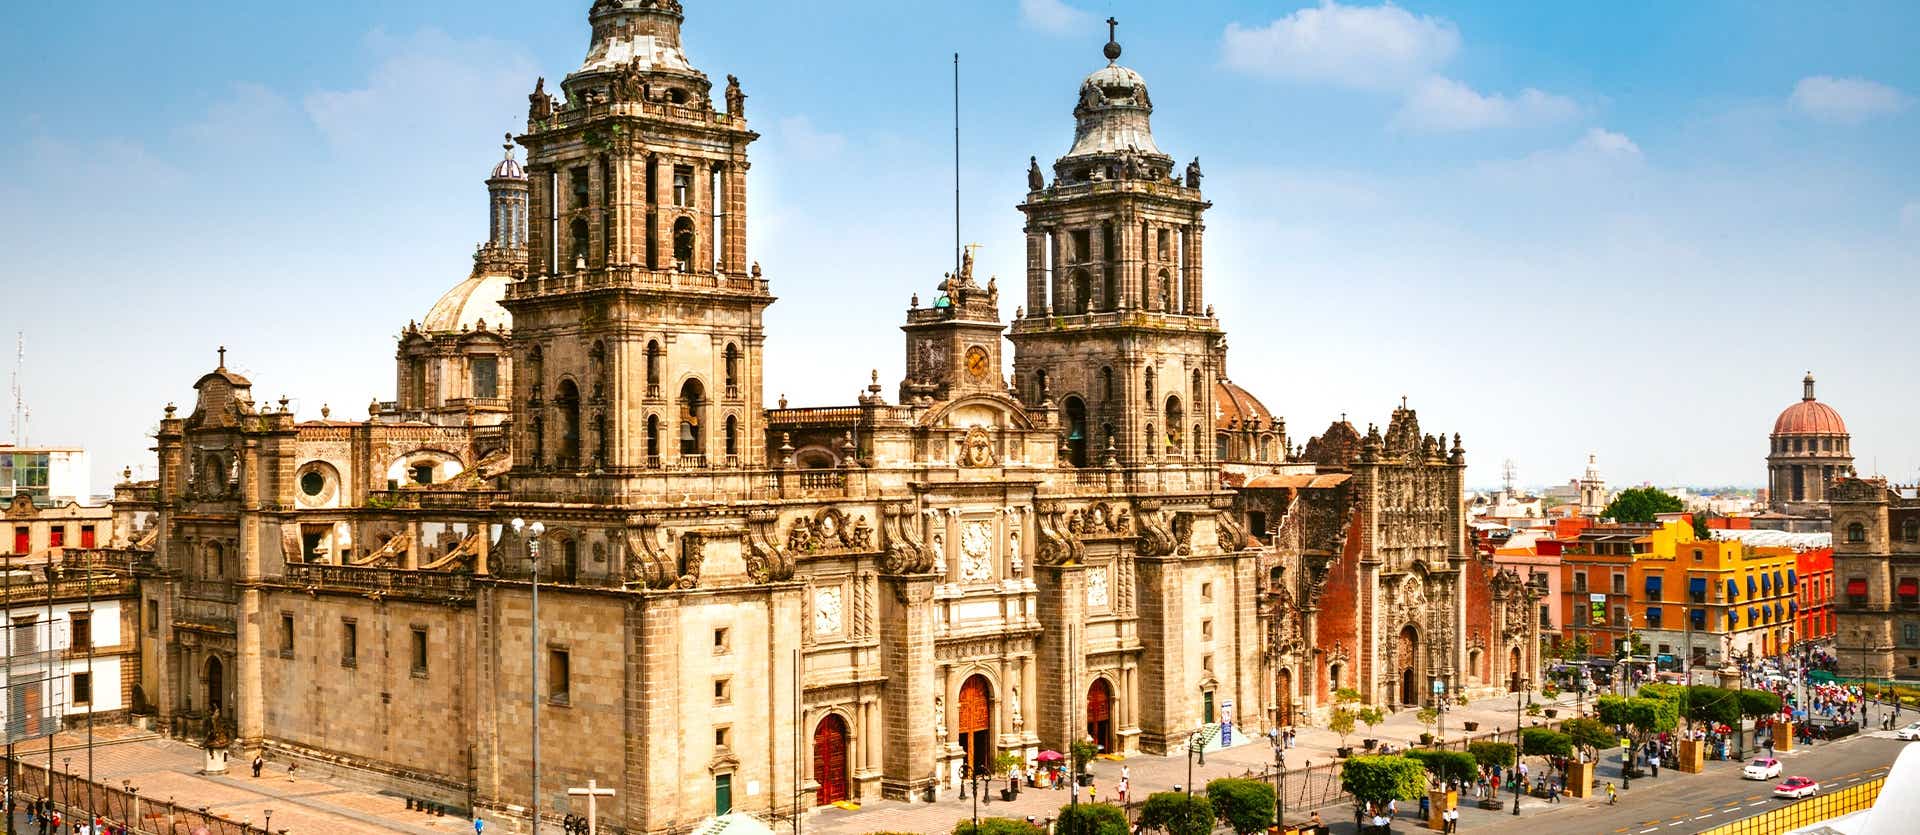 Metropolitan Cathedral <span class="iconos separador"></span> Mexico City